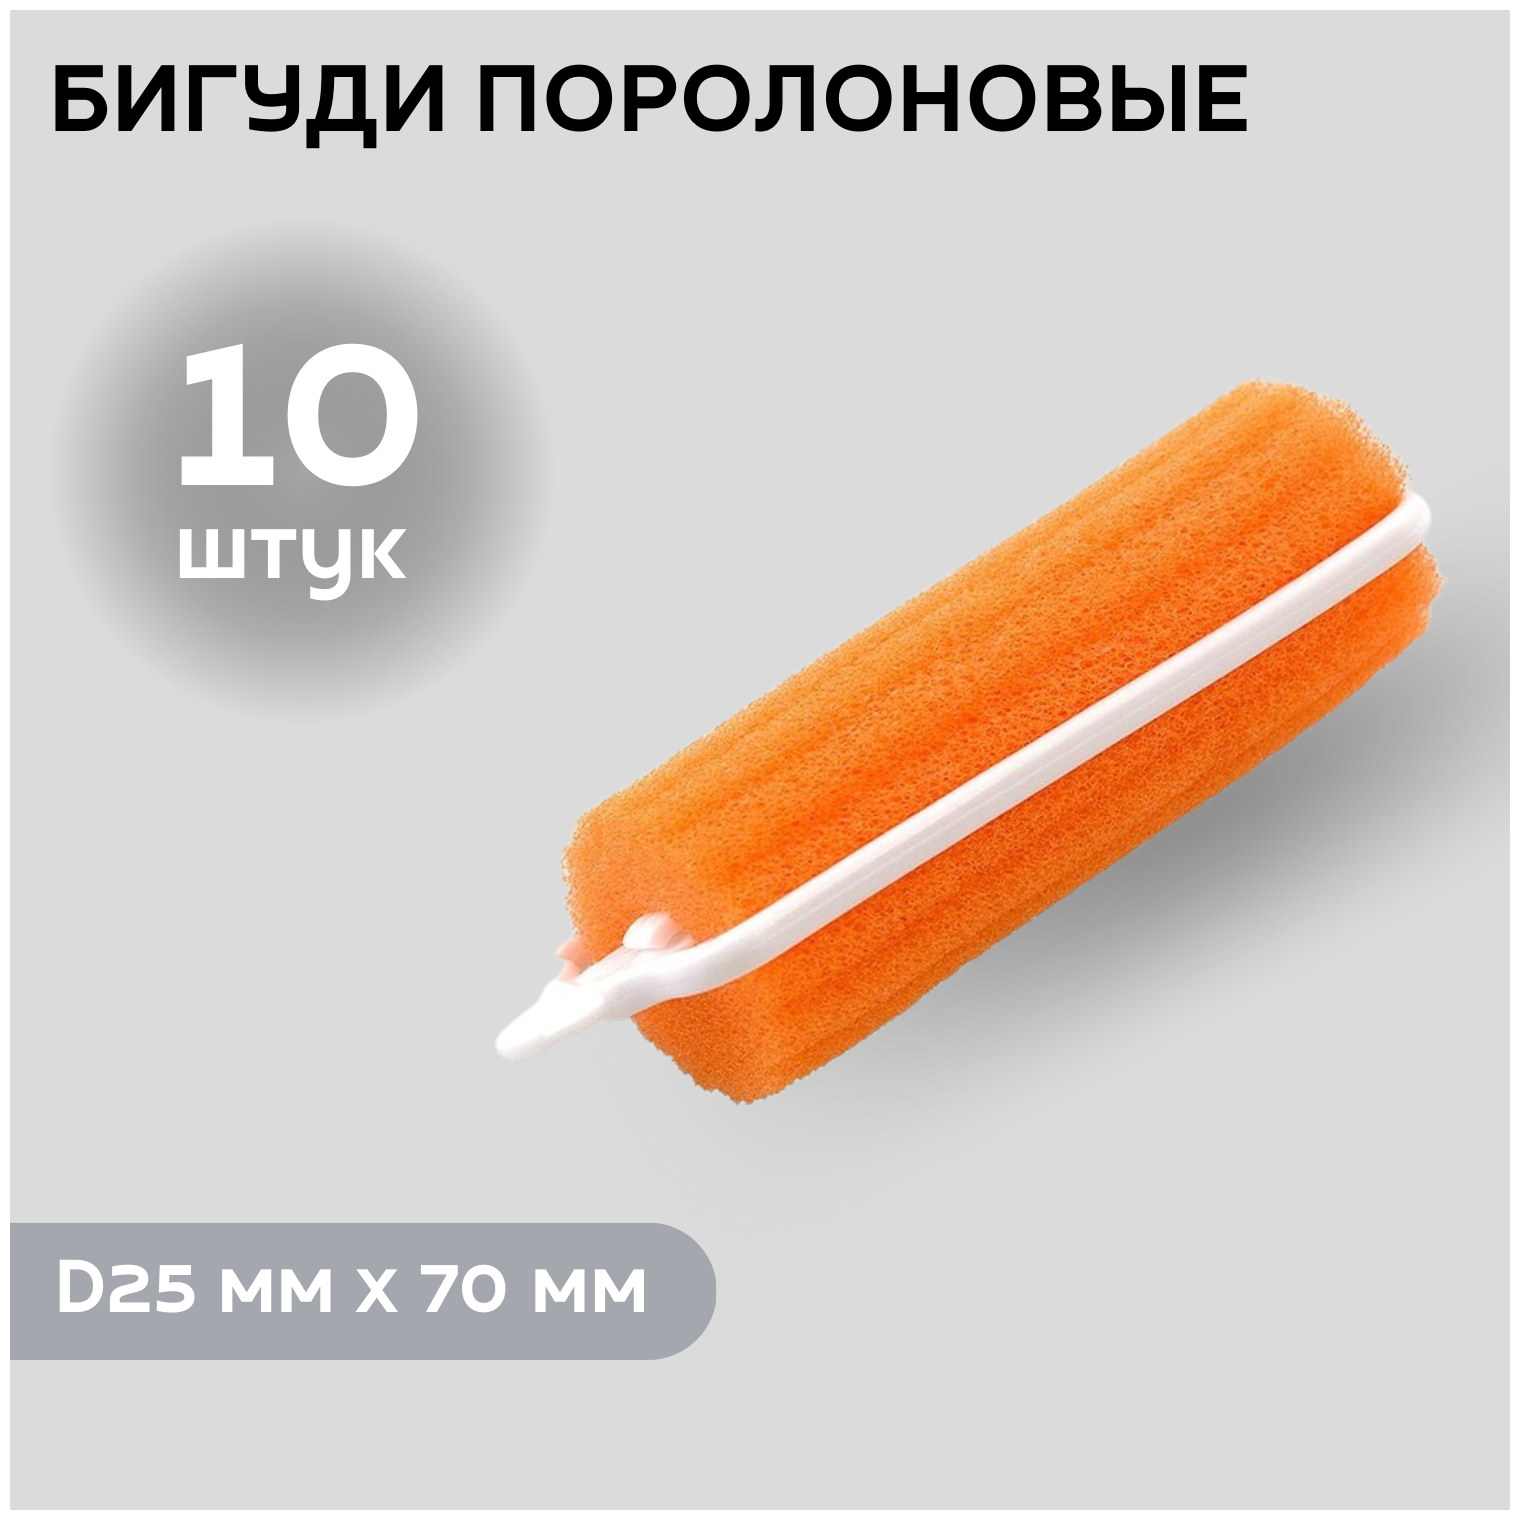 DEWAL BEAUTY Бигуди поролоновые DBP25, оранжевые, d 25 мм x 70 мм, 10 шт.